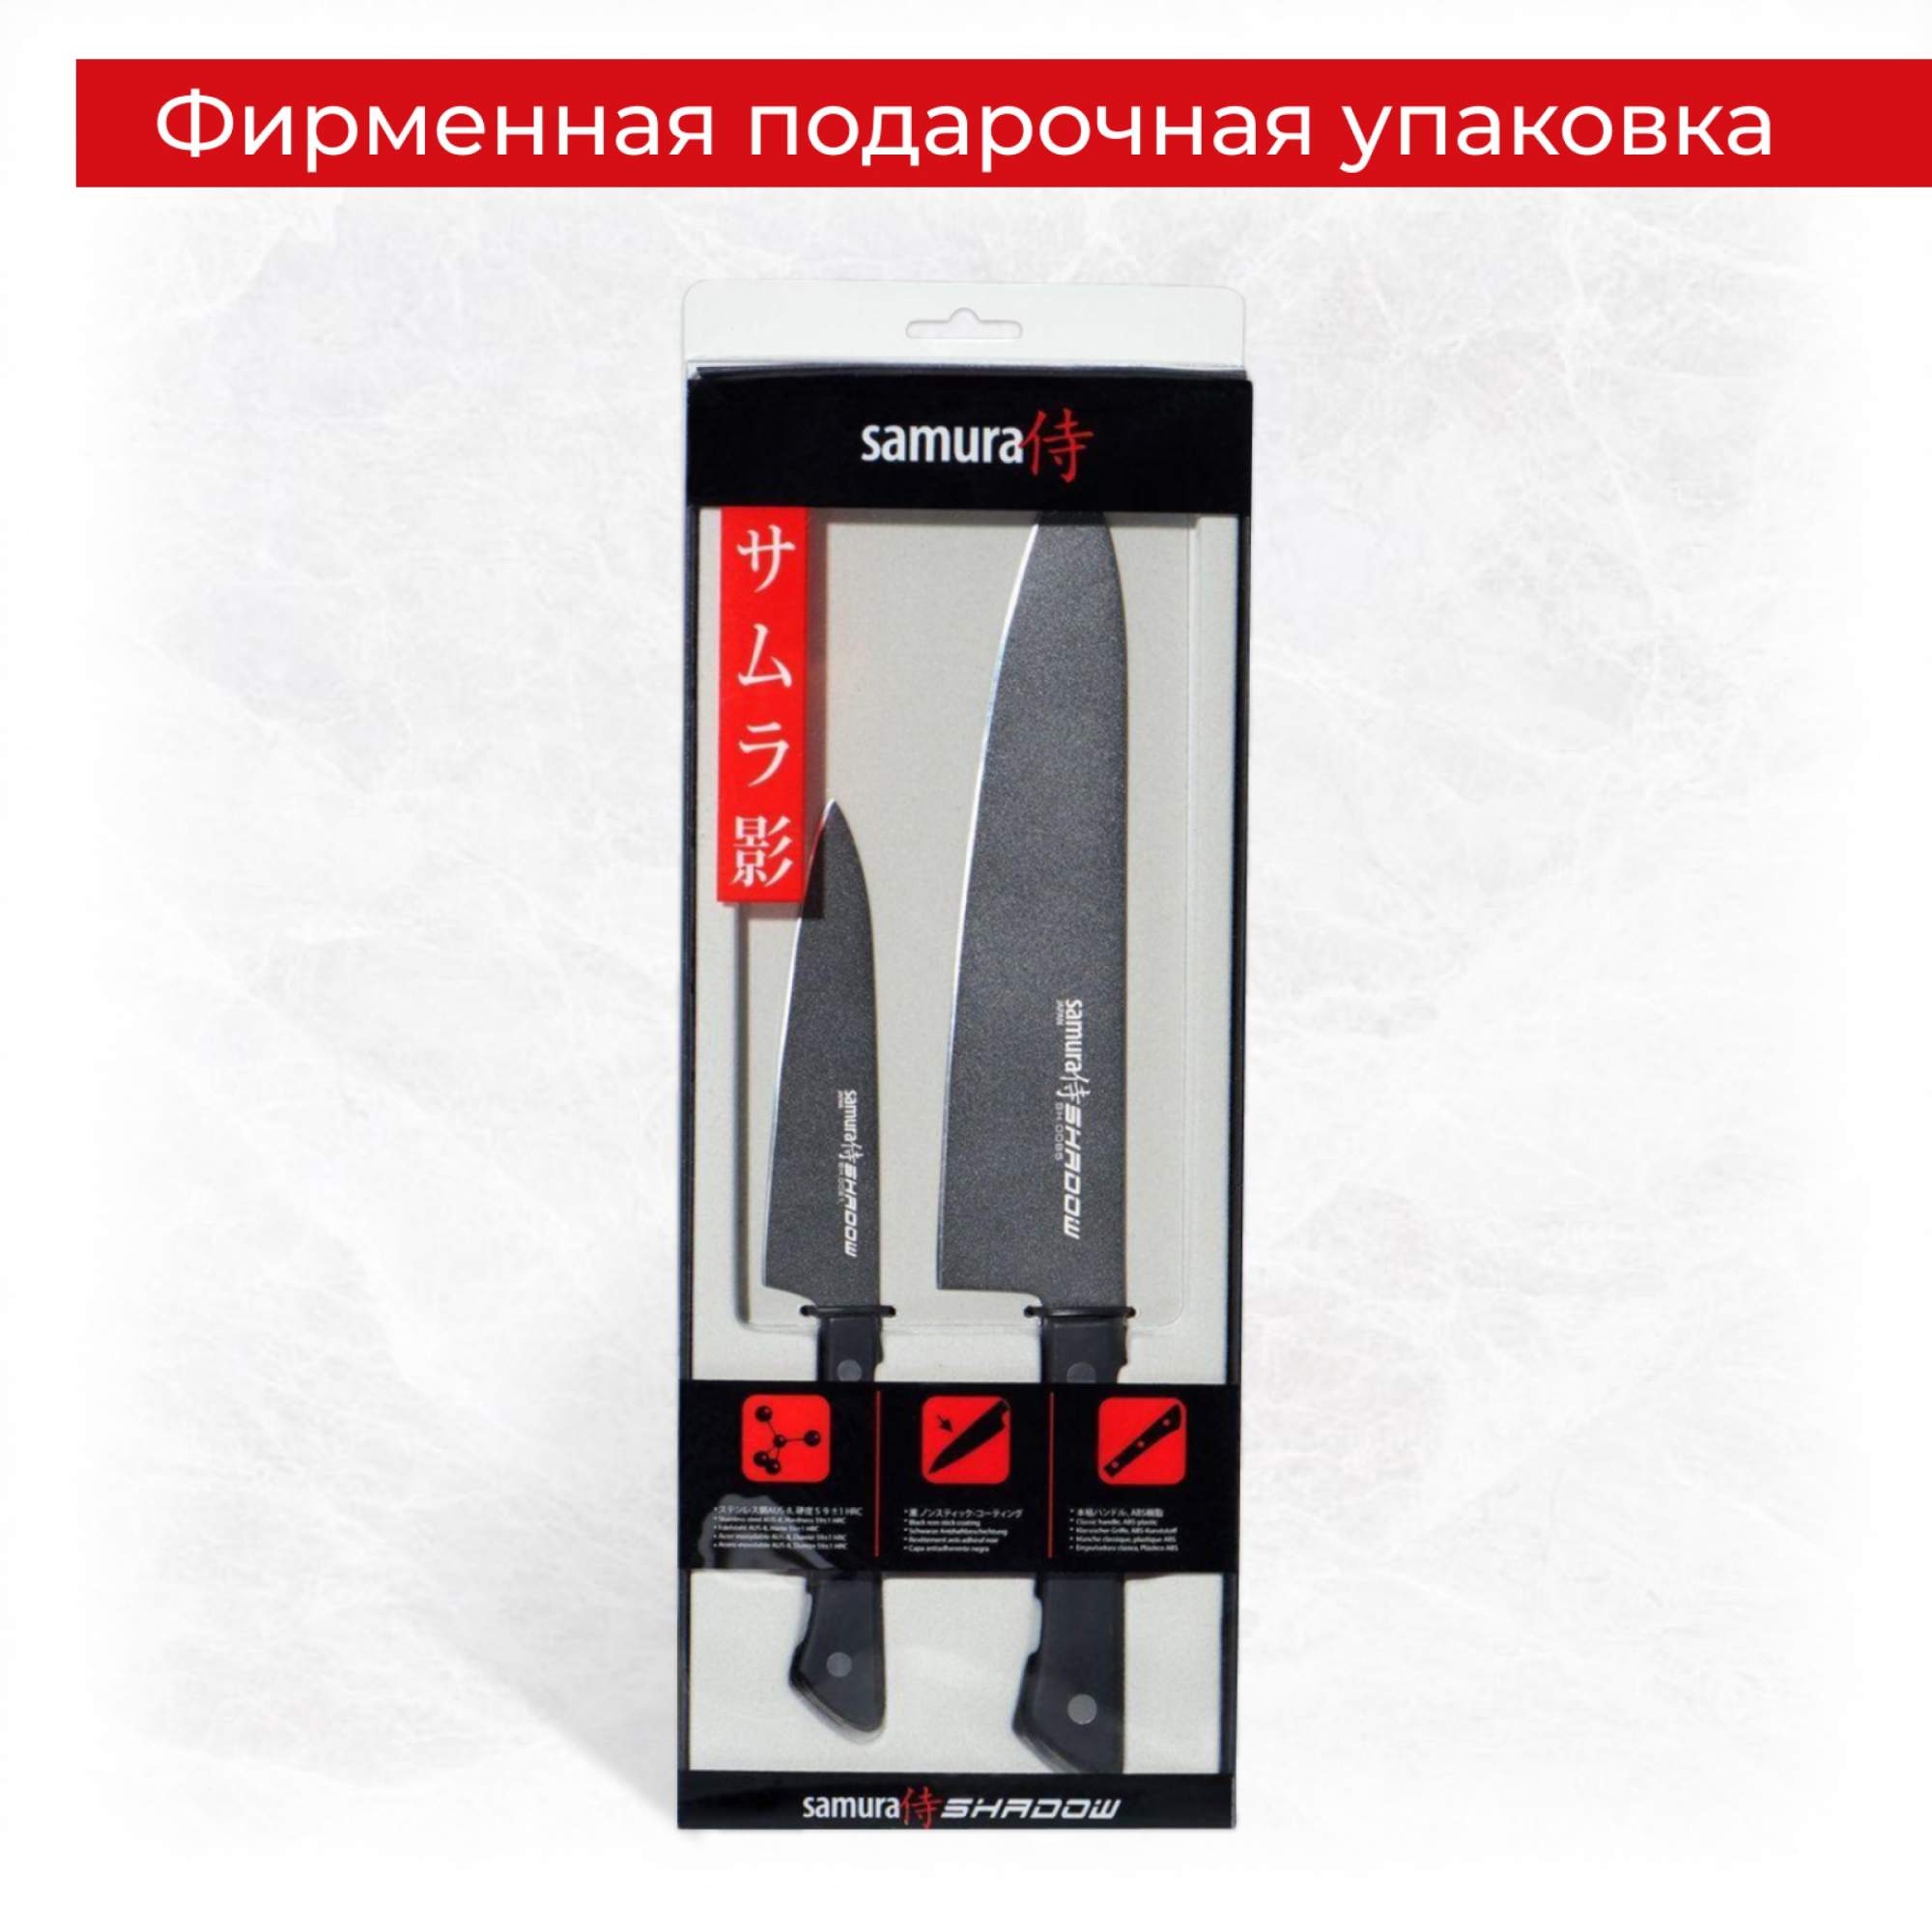  кухонных поварских профессиональных ножей Samura Shadow .